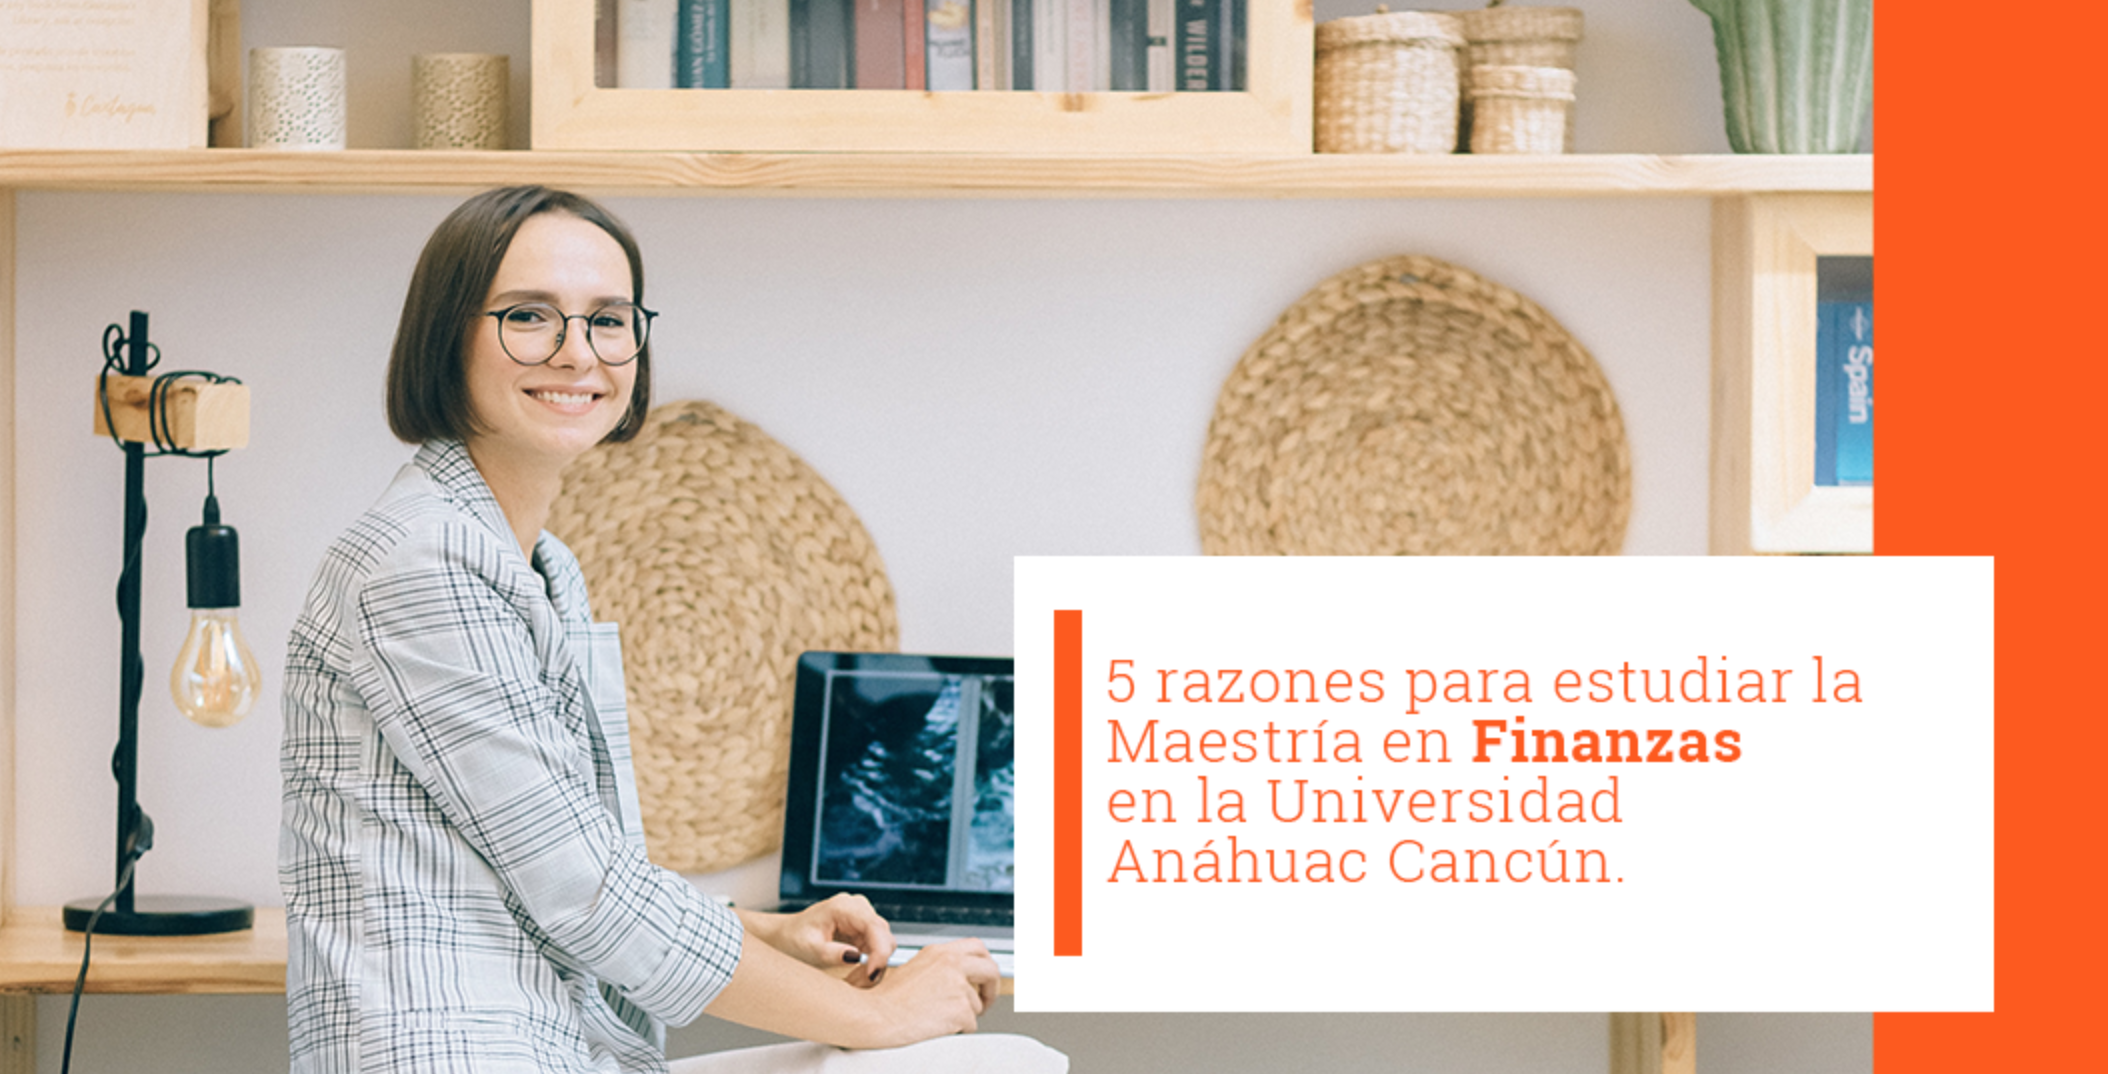 5 razones para estudiar la Maestría en Finanzas en la Universidad Anáhuac Cancún